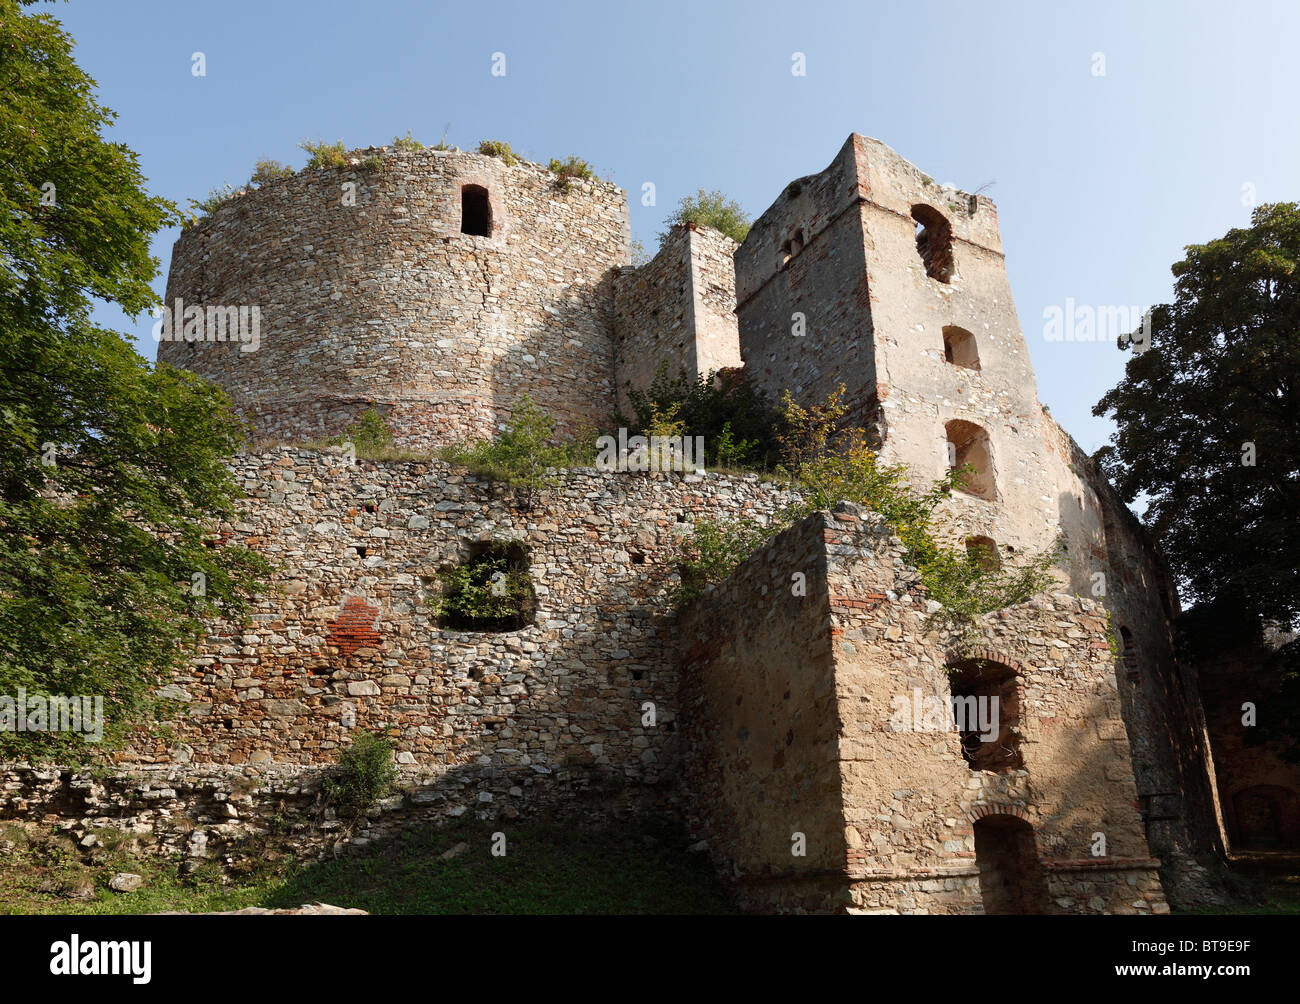 Landsee Burgruine rovine del castello, Burgenland, Austria, Europa Foto Stock